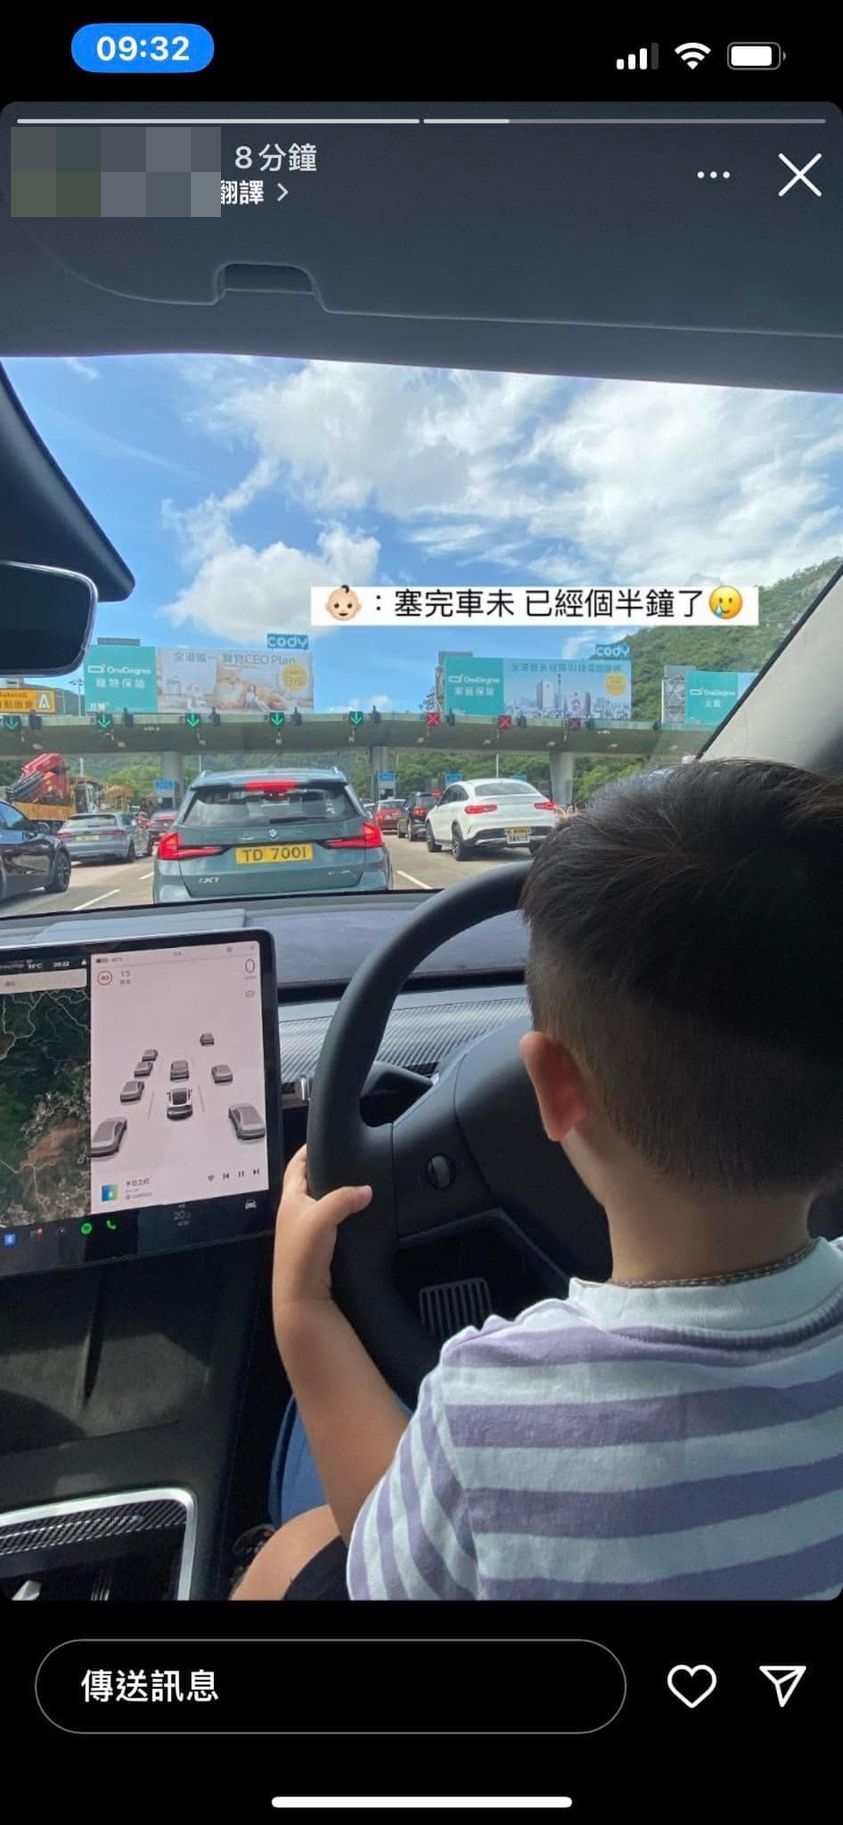 有市民上载图片大呻塞车之苦，却被揭发小童坐大髀驾驶。马路的事讨论区图片